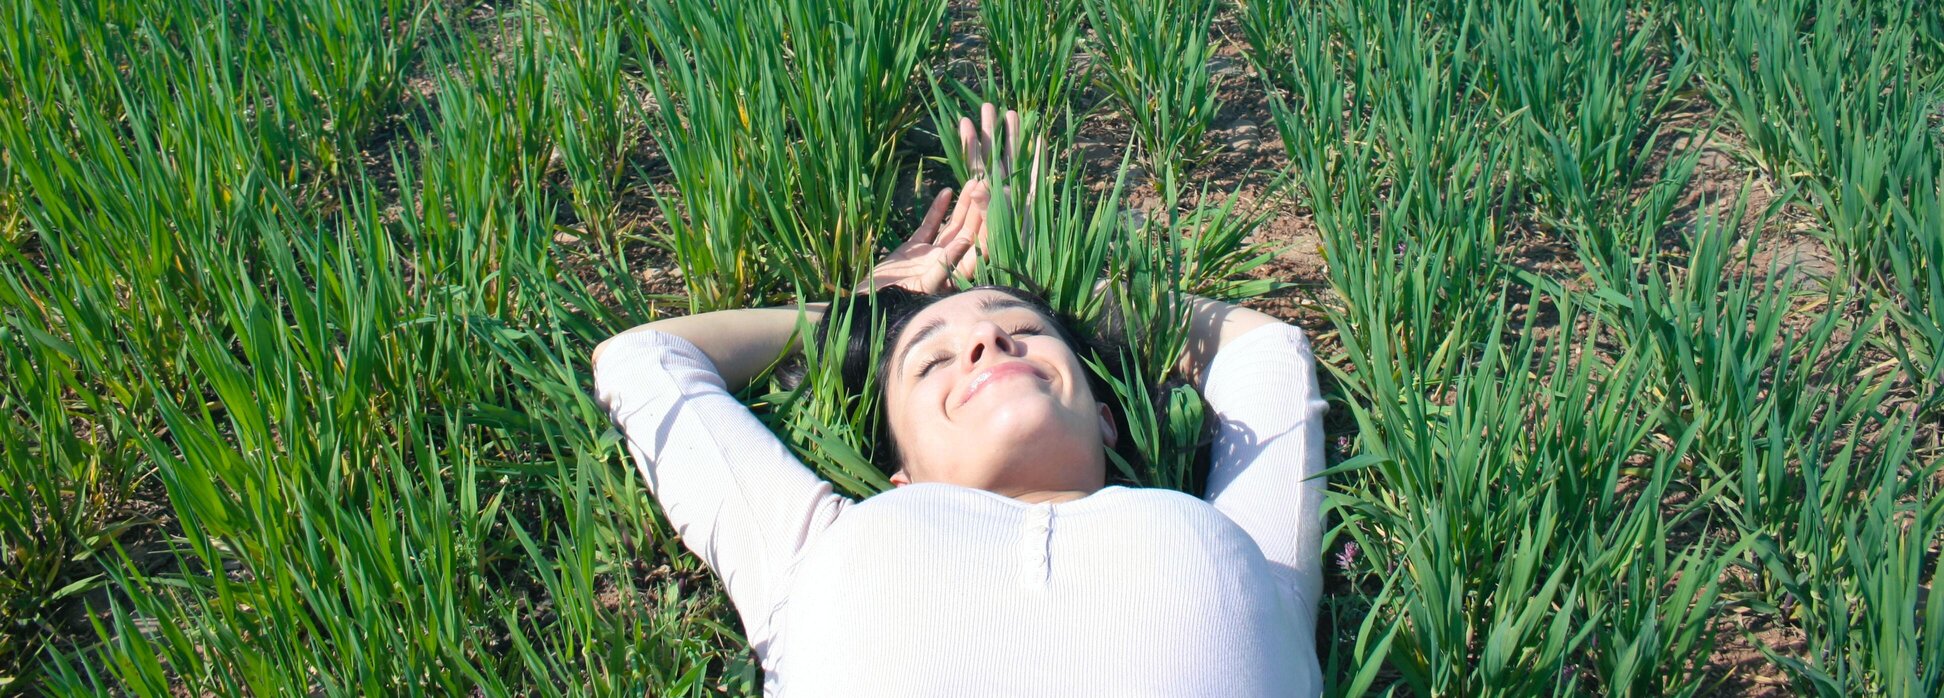 Jeune femme relaxée allongée dans l'herbe, yeux clos